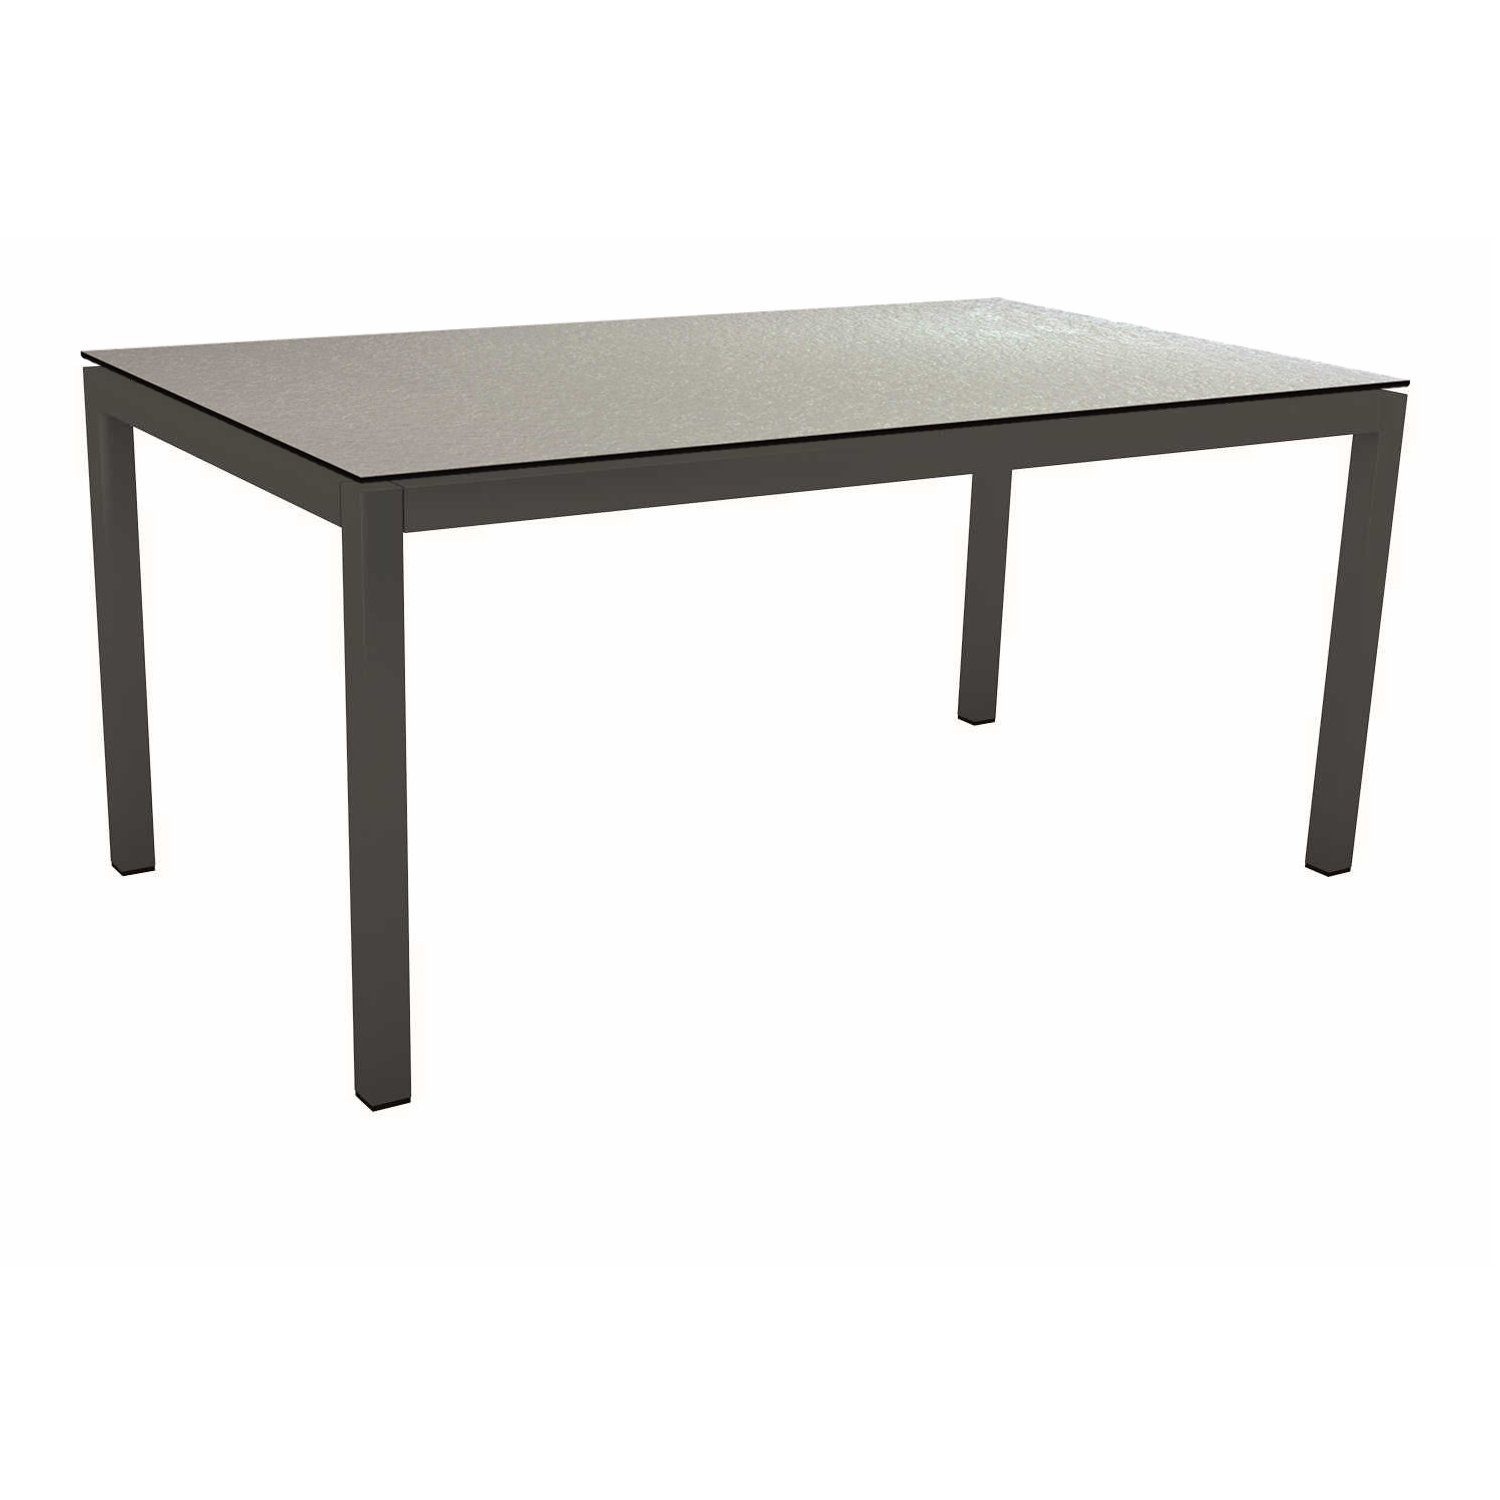 Stern Tischsystem Gartentisch, Gestell Aluminium anthrazit, Tischplatte HPL Uni grau, Maße: 160x90 cm